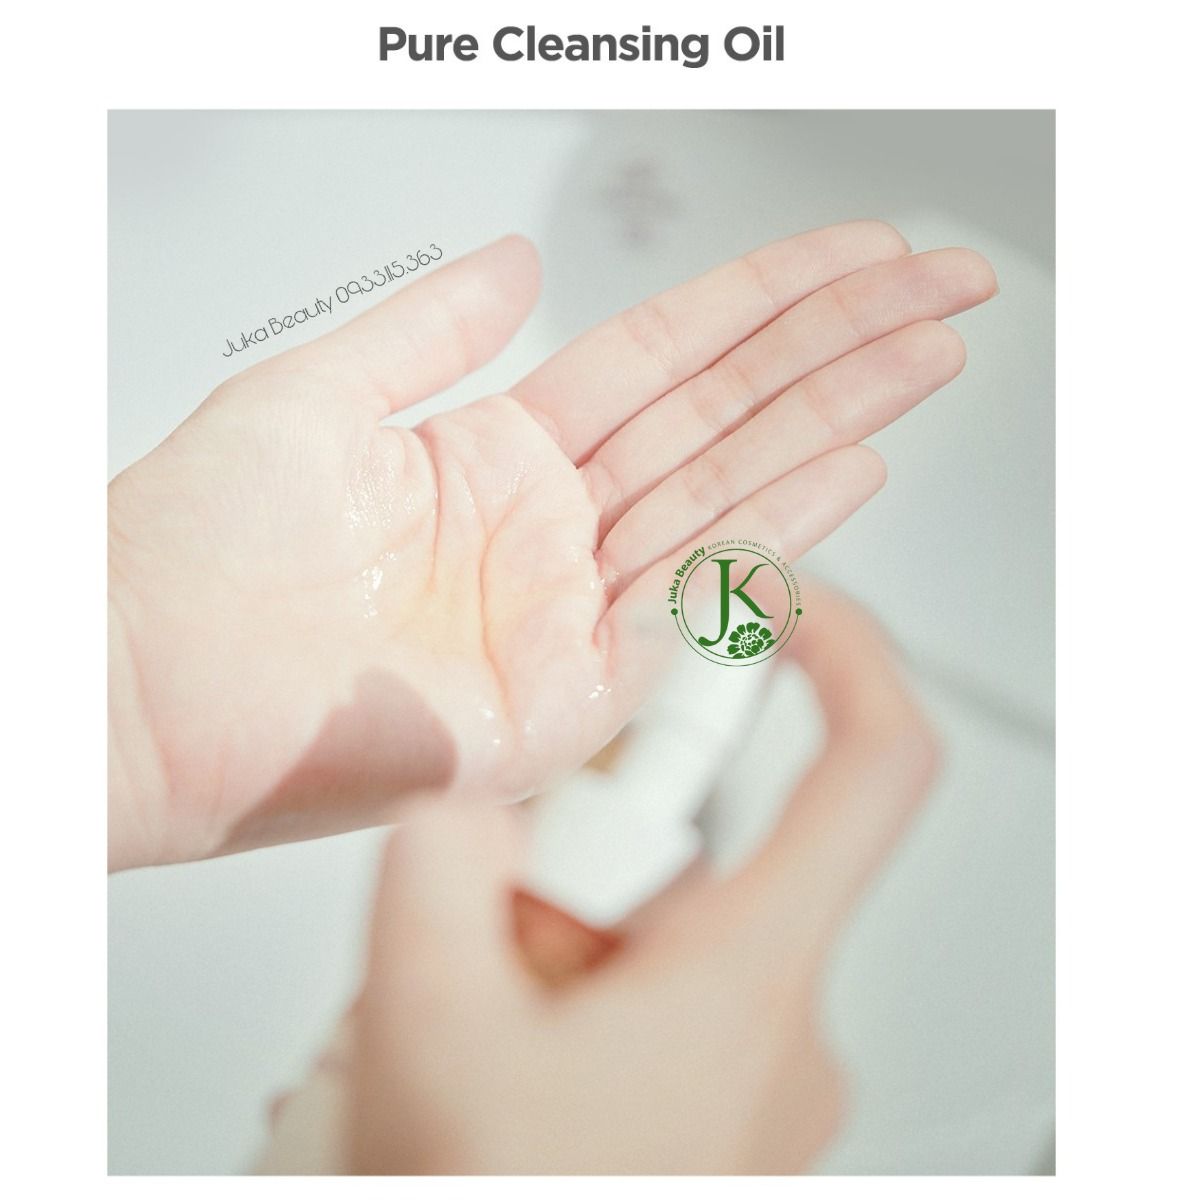  Dầu Tẩy Trang Sạch Sâu Lớp Trang Điểm Ma:nyo Pure Cleansing Oil 200ml (VÀNG) 